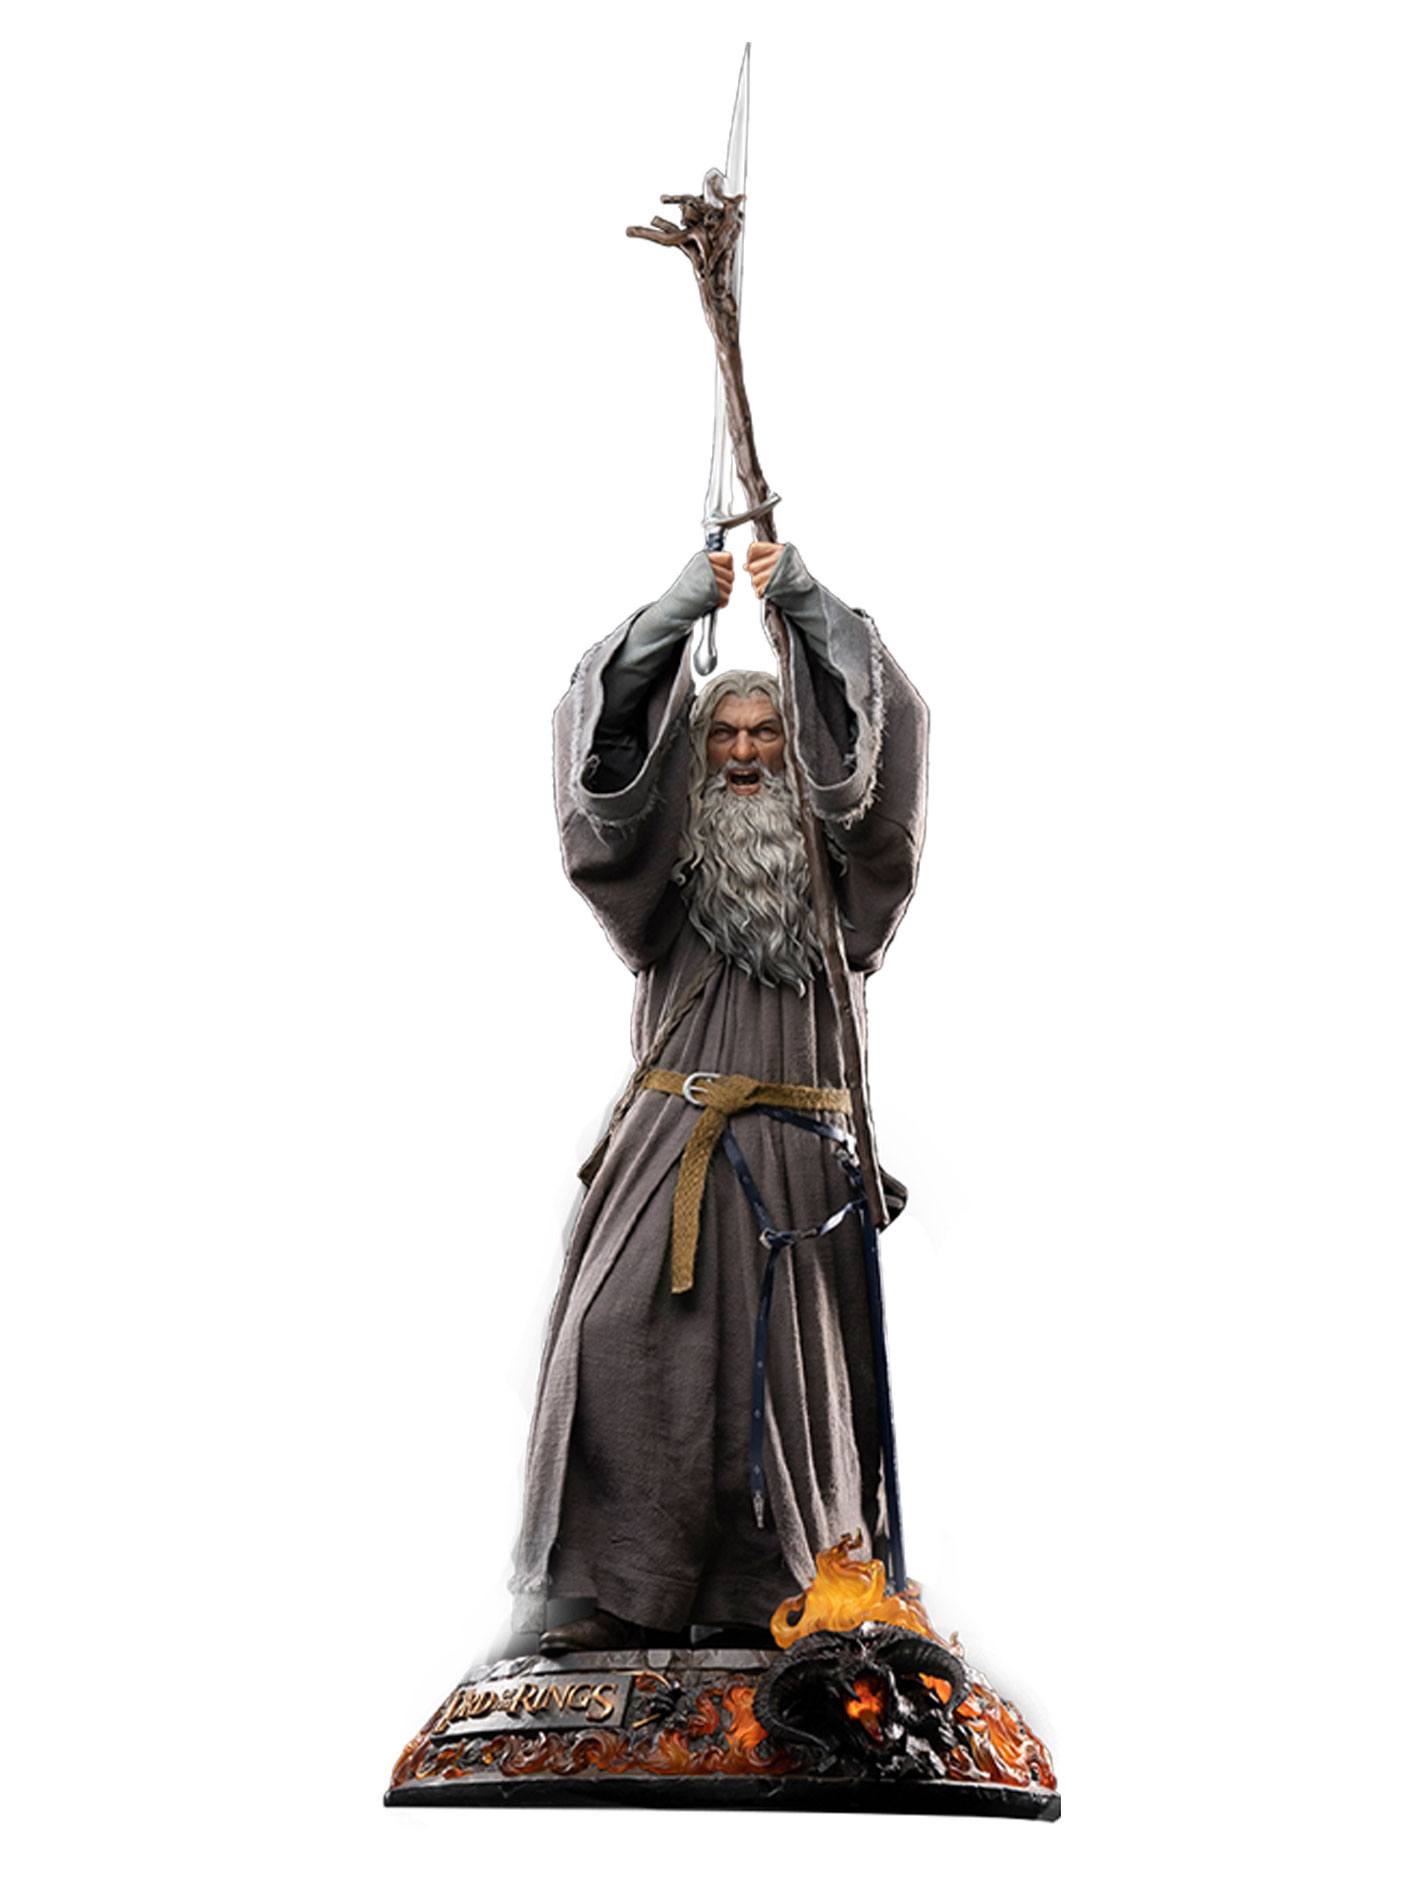 Herr der Ringe Master Forge Series Statue 1/2 Gandalf der Graue Premium Edition 156 cm